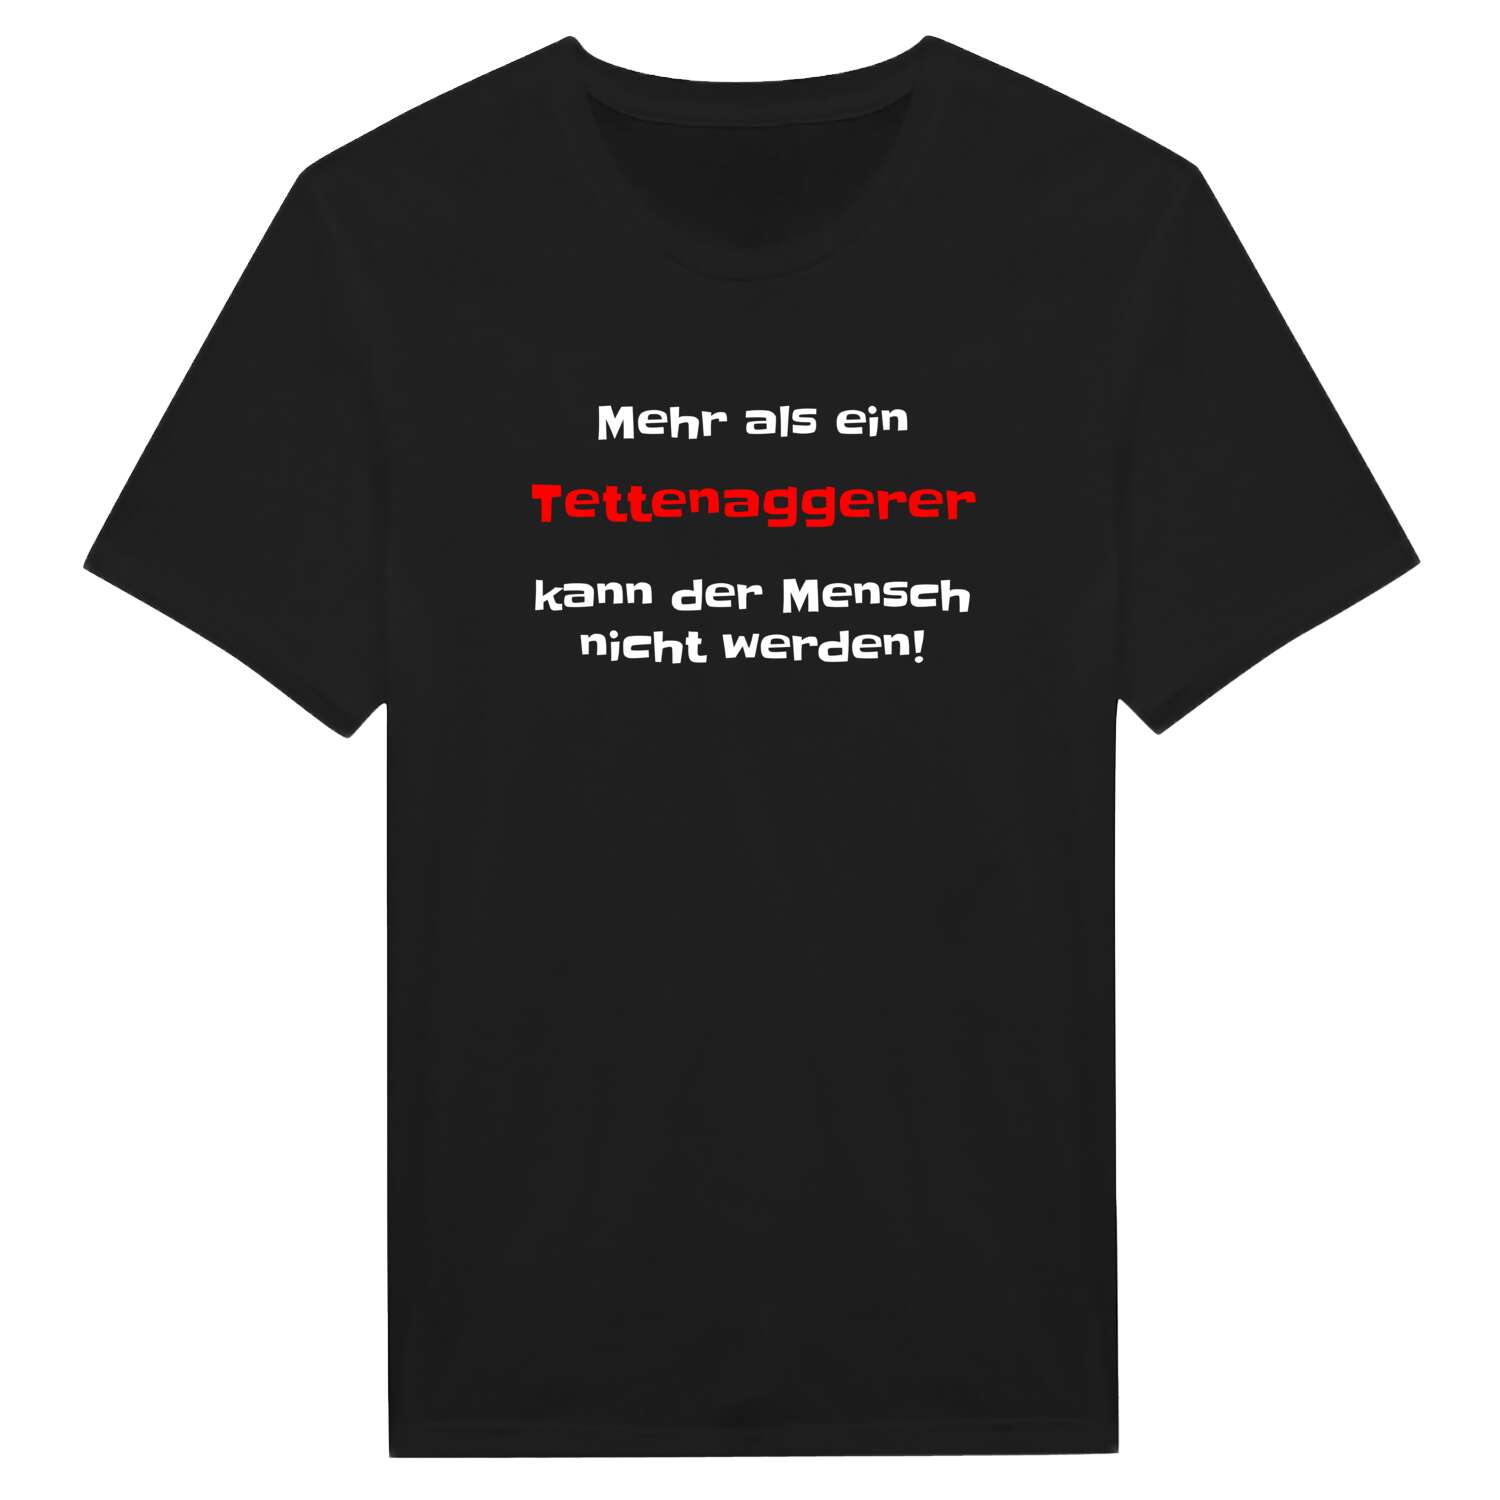 Tettenagger T-Shirt »Mehr als ein«